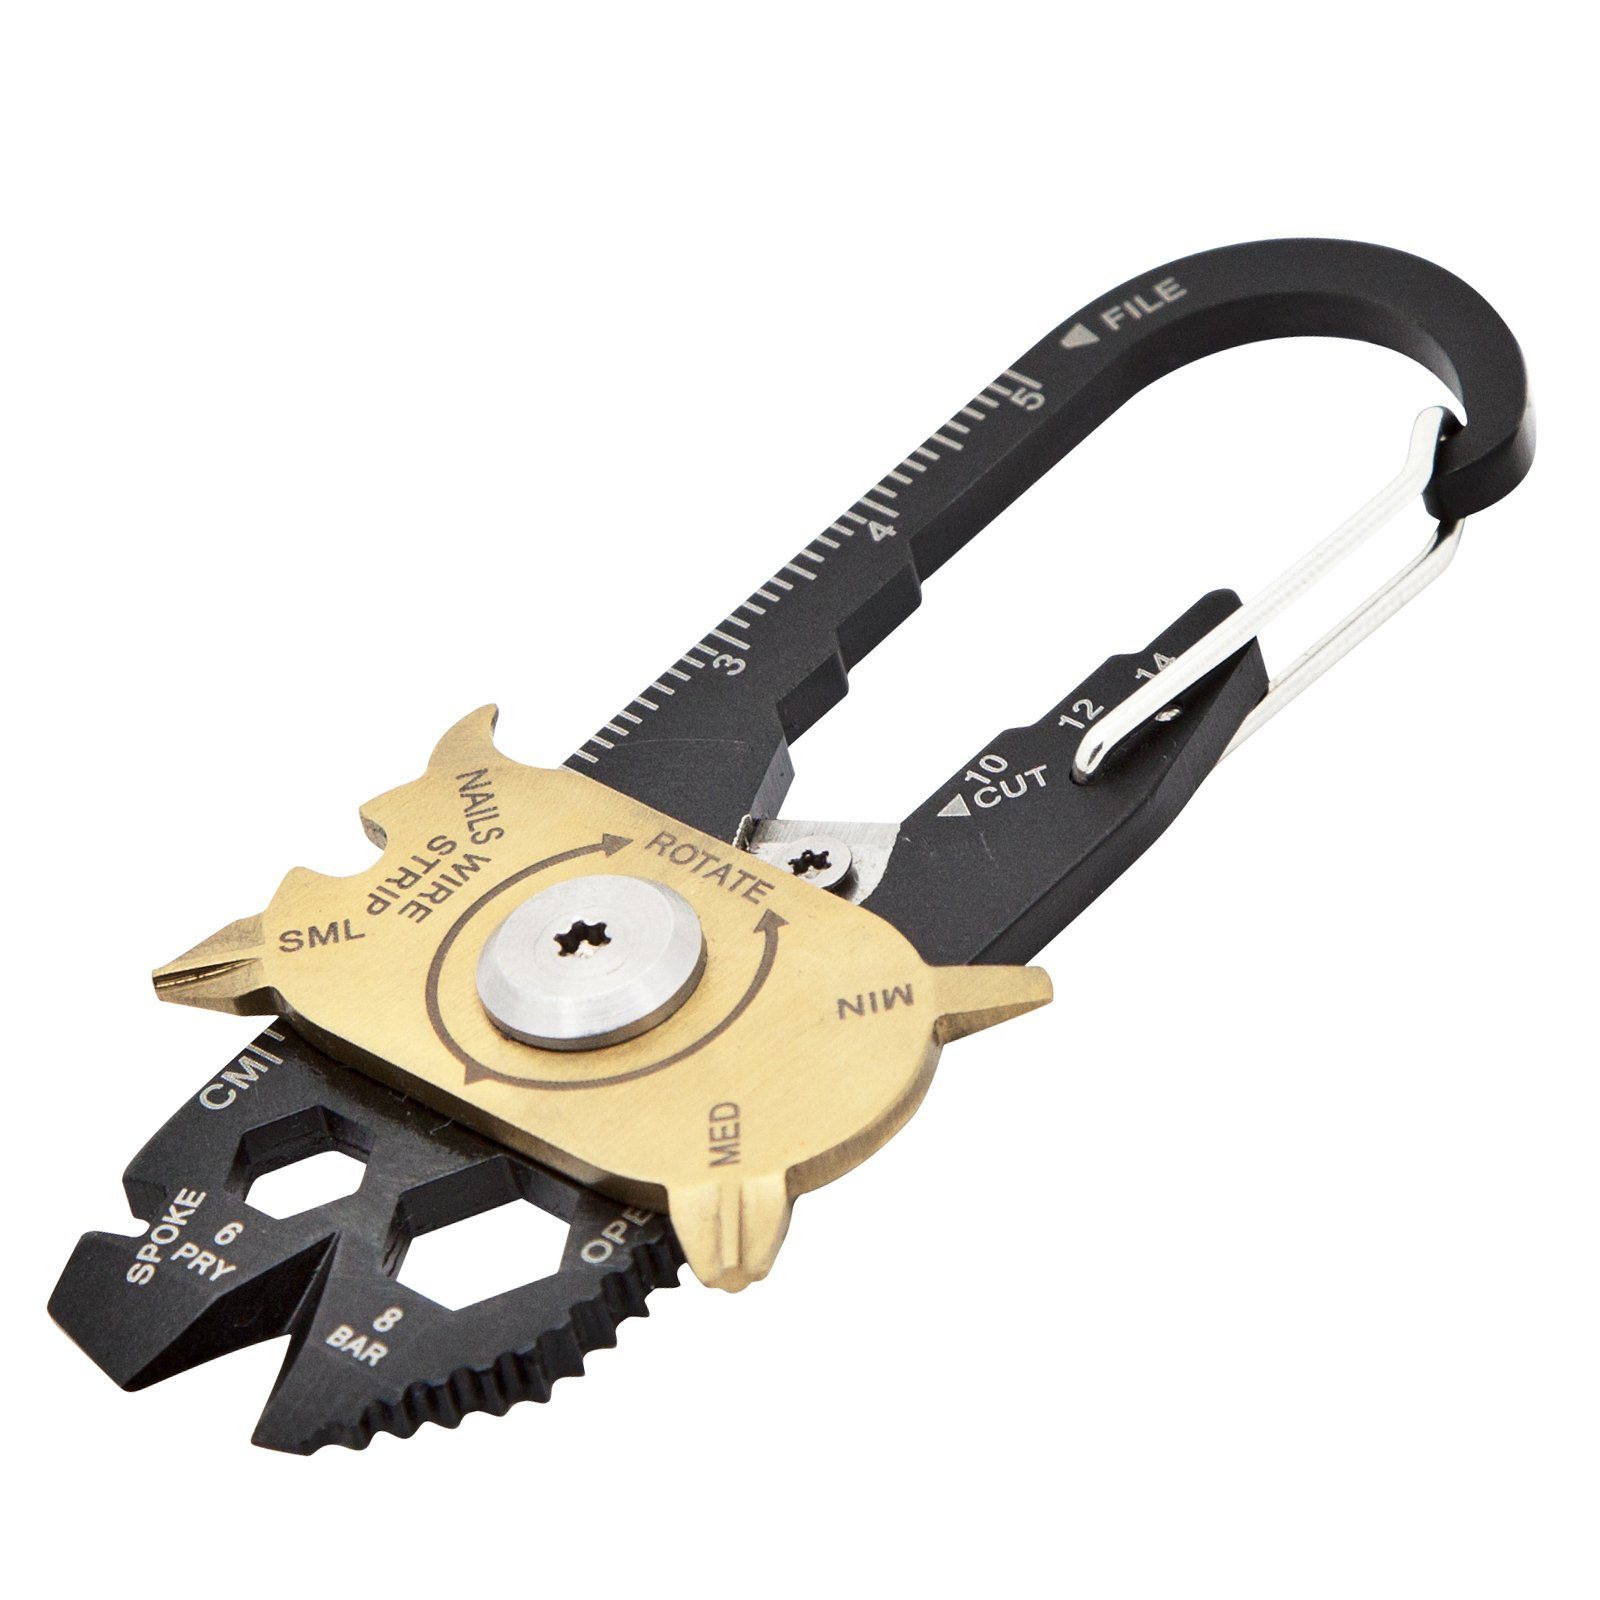 True Utility Schlüsselanhänger Tool, Multitool Micro FIXR Multitool Taschenmesser Mini Clip